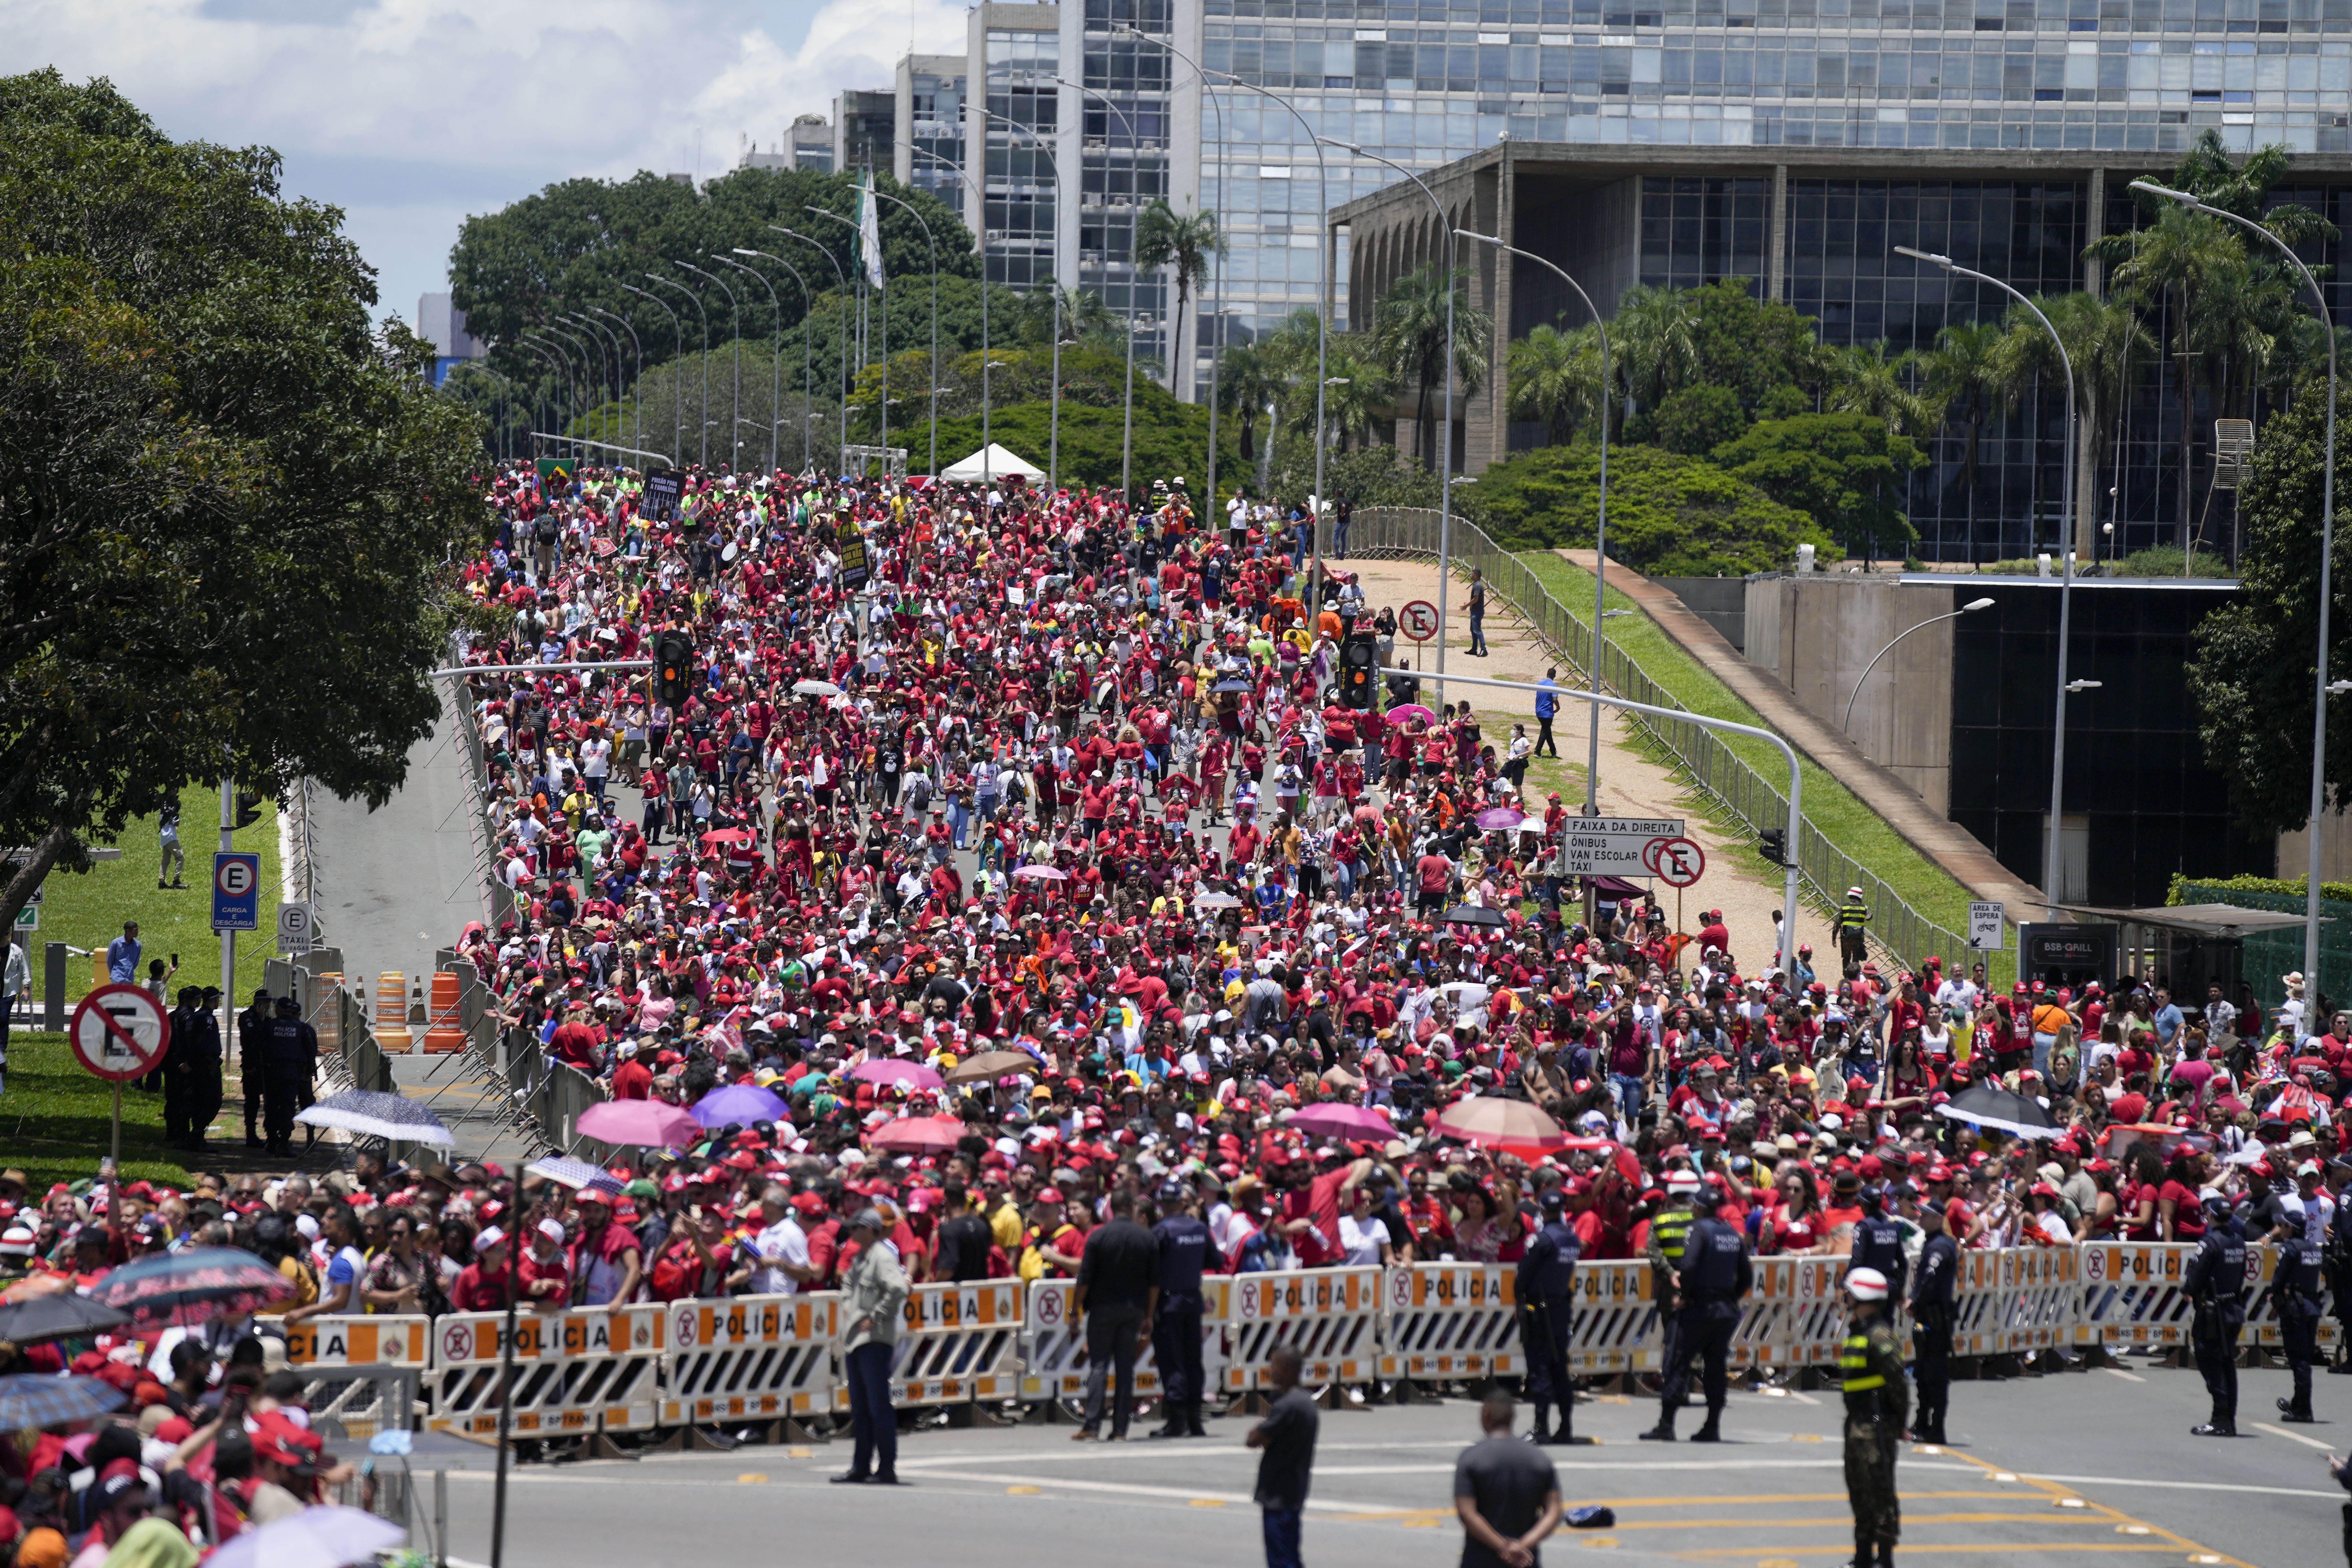 Miles de personas se empiezan a congregar para la investidura de Lula